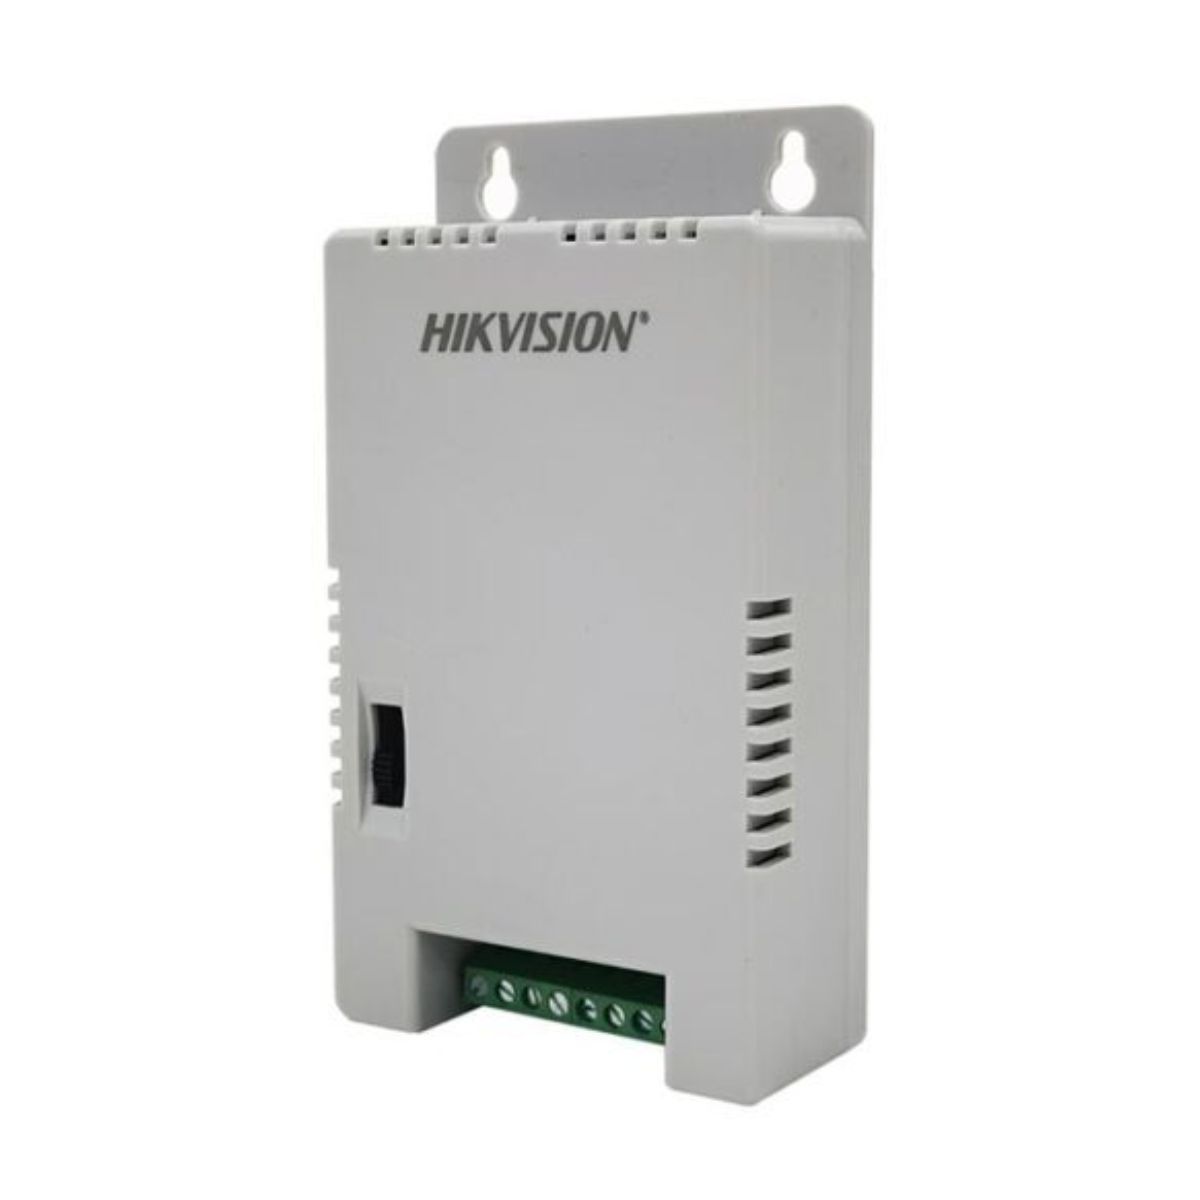 Nguồn tổng 4 kênh Hikvision DS-2FA1225-C4(EUR) công suất 48W, bảo vệ ngắn mạch, quá áp